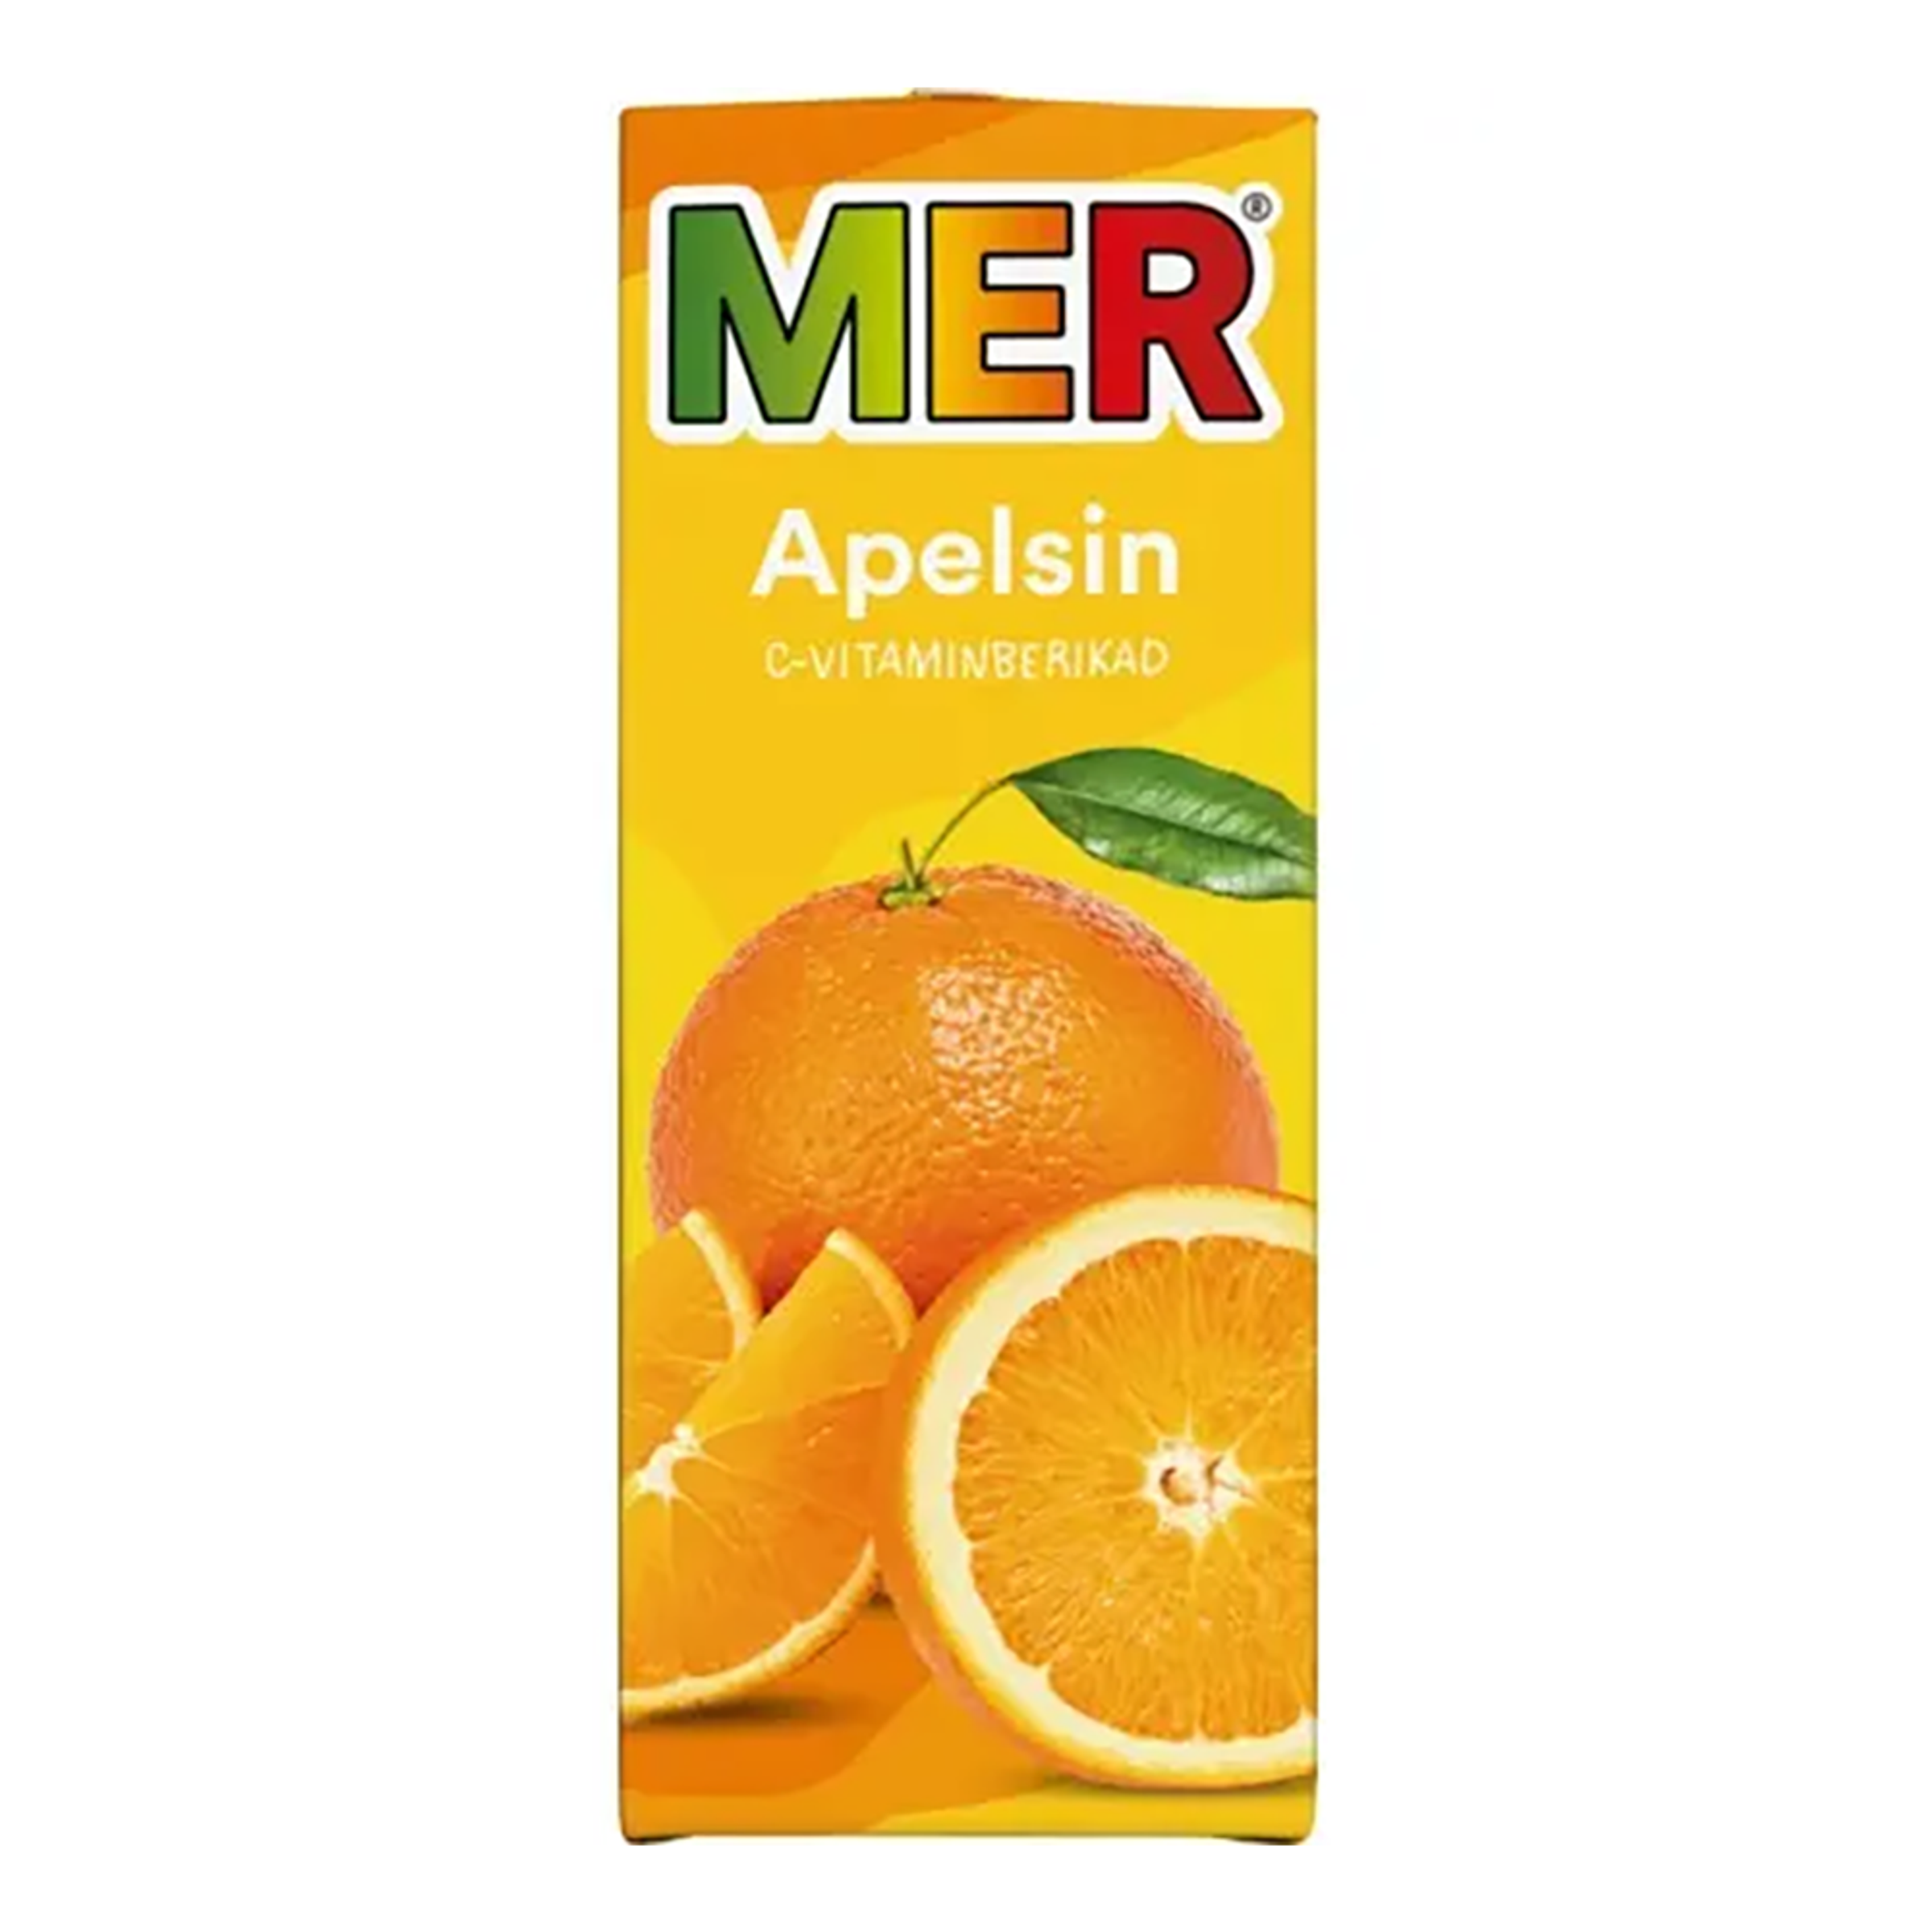 Mer Apelsin Tetra - 1-pack